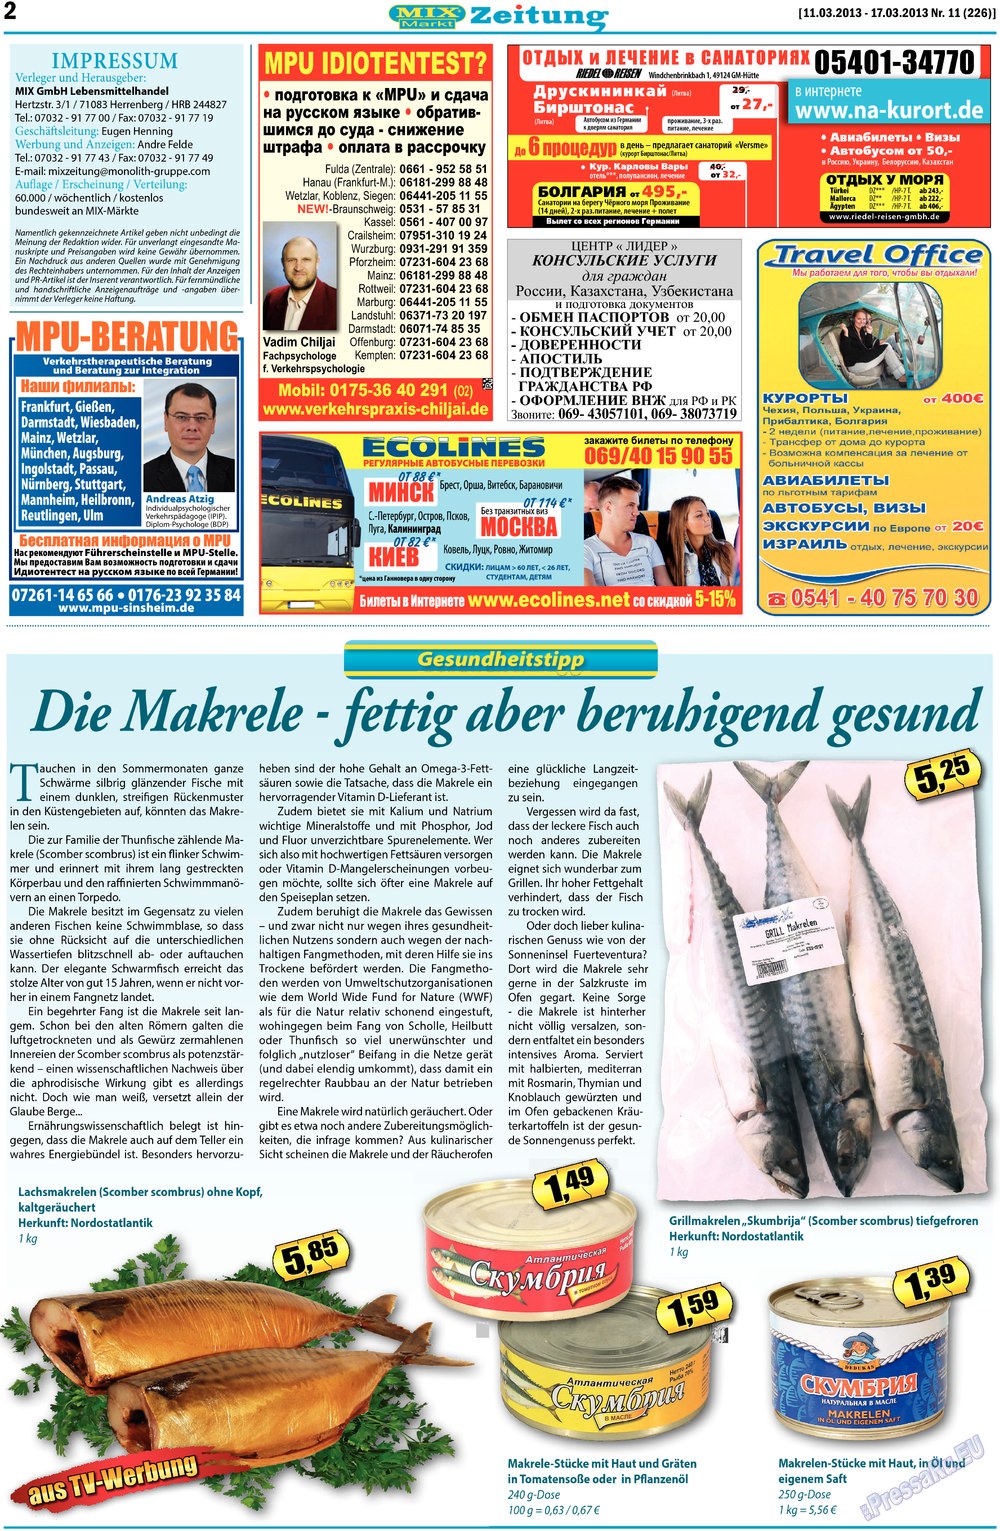 MIX-Markt Zeitung (газета). 2013 год, номер 11, стр. 2